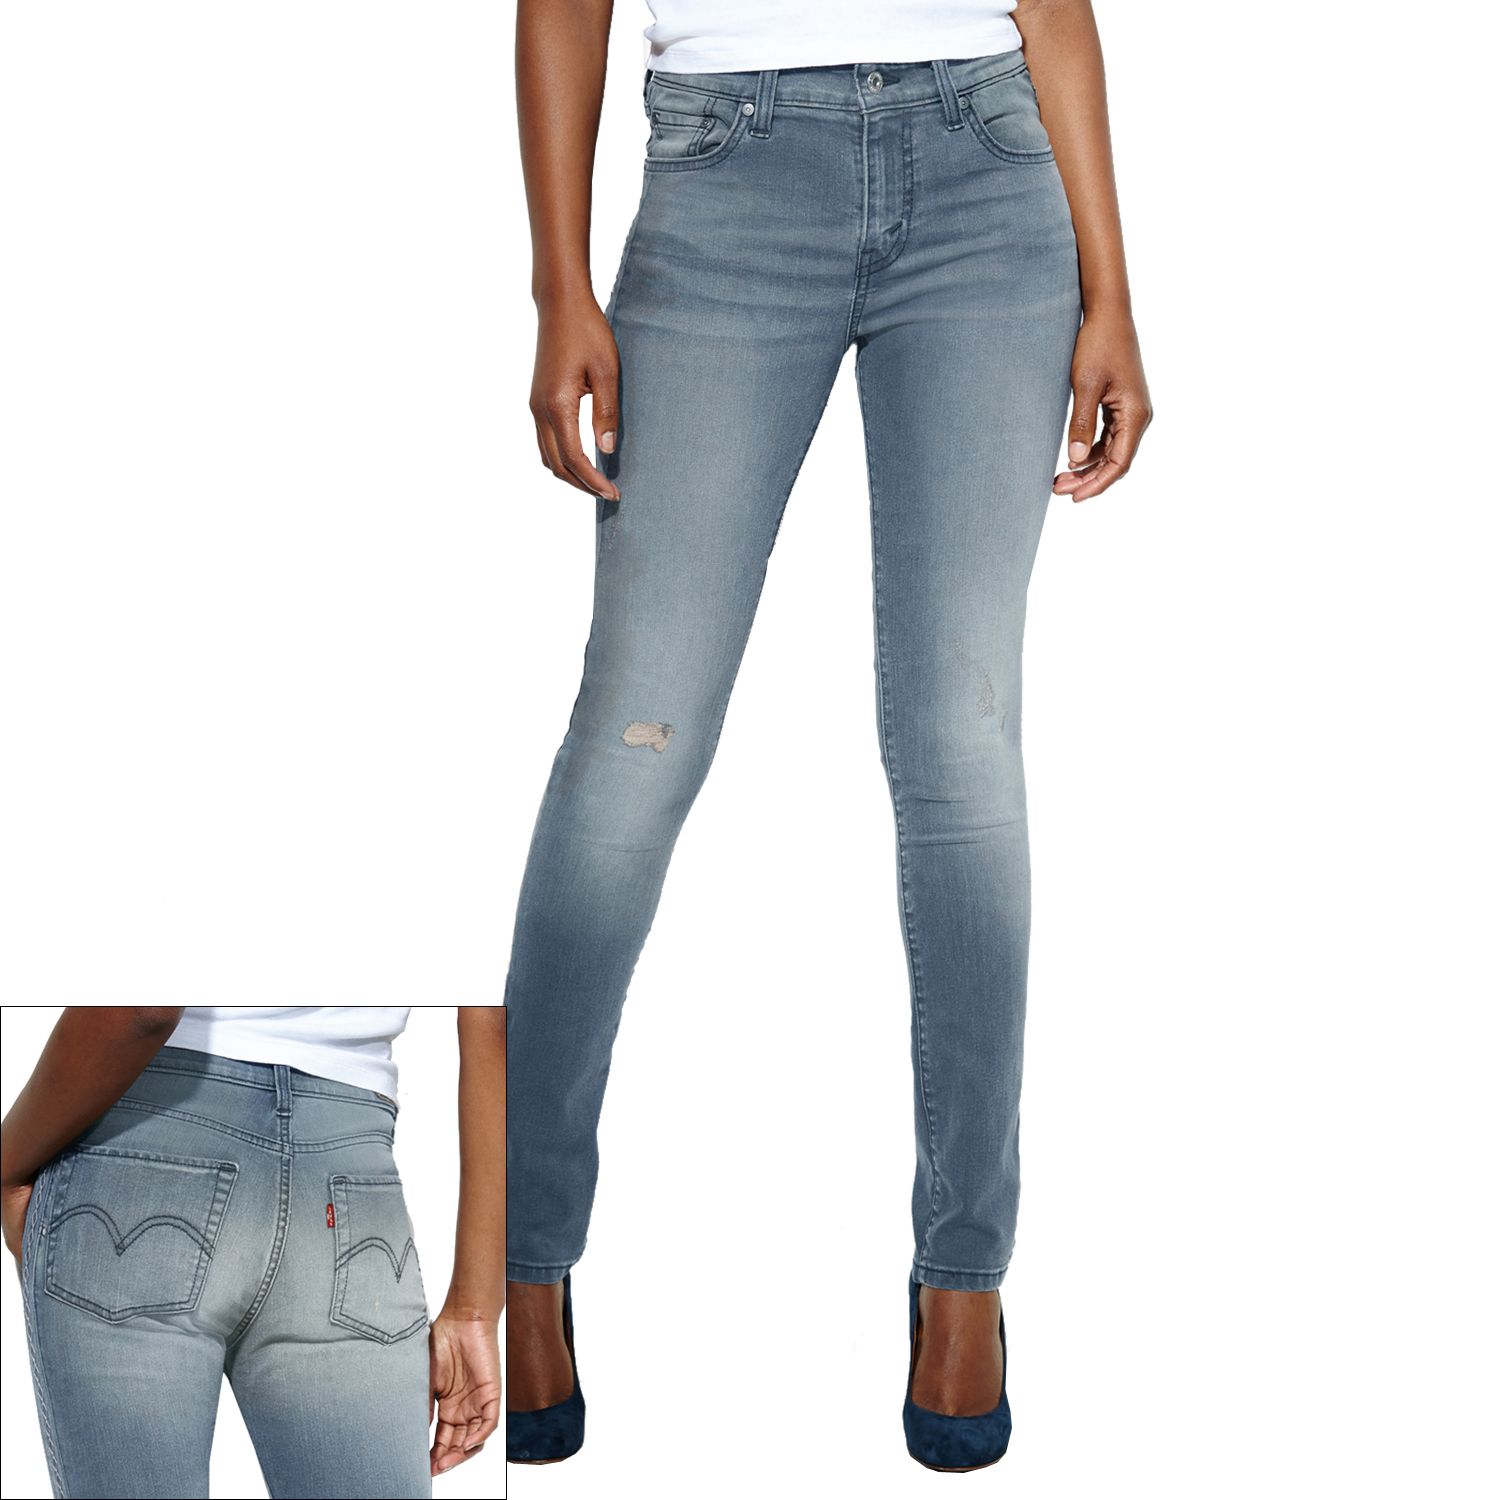 kohl's levi's mid rise skinny jeans